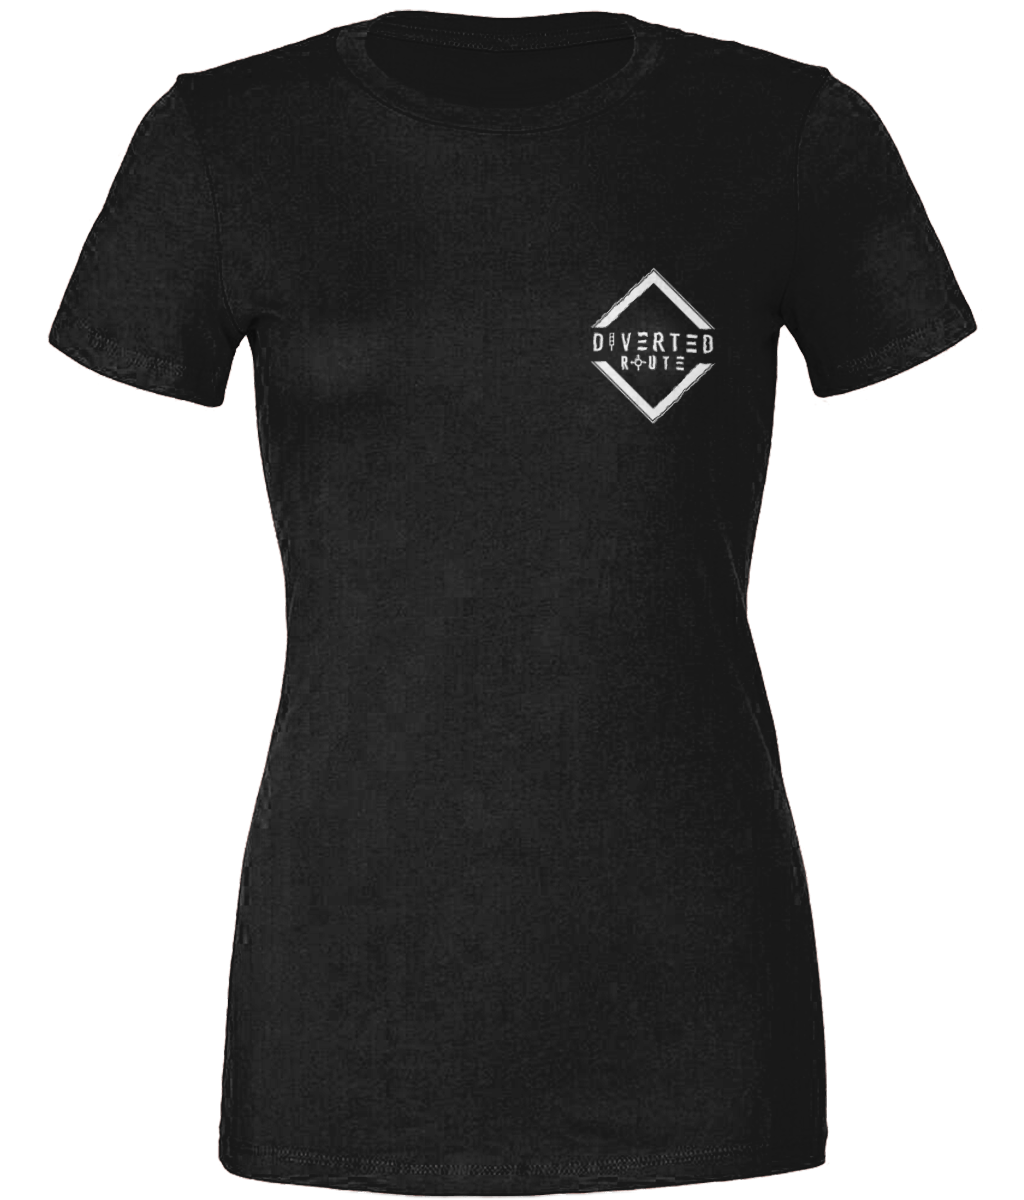 Diverted Route Ltd Womens Original T Shirt